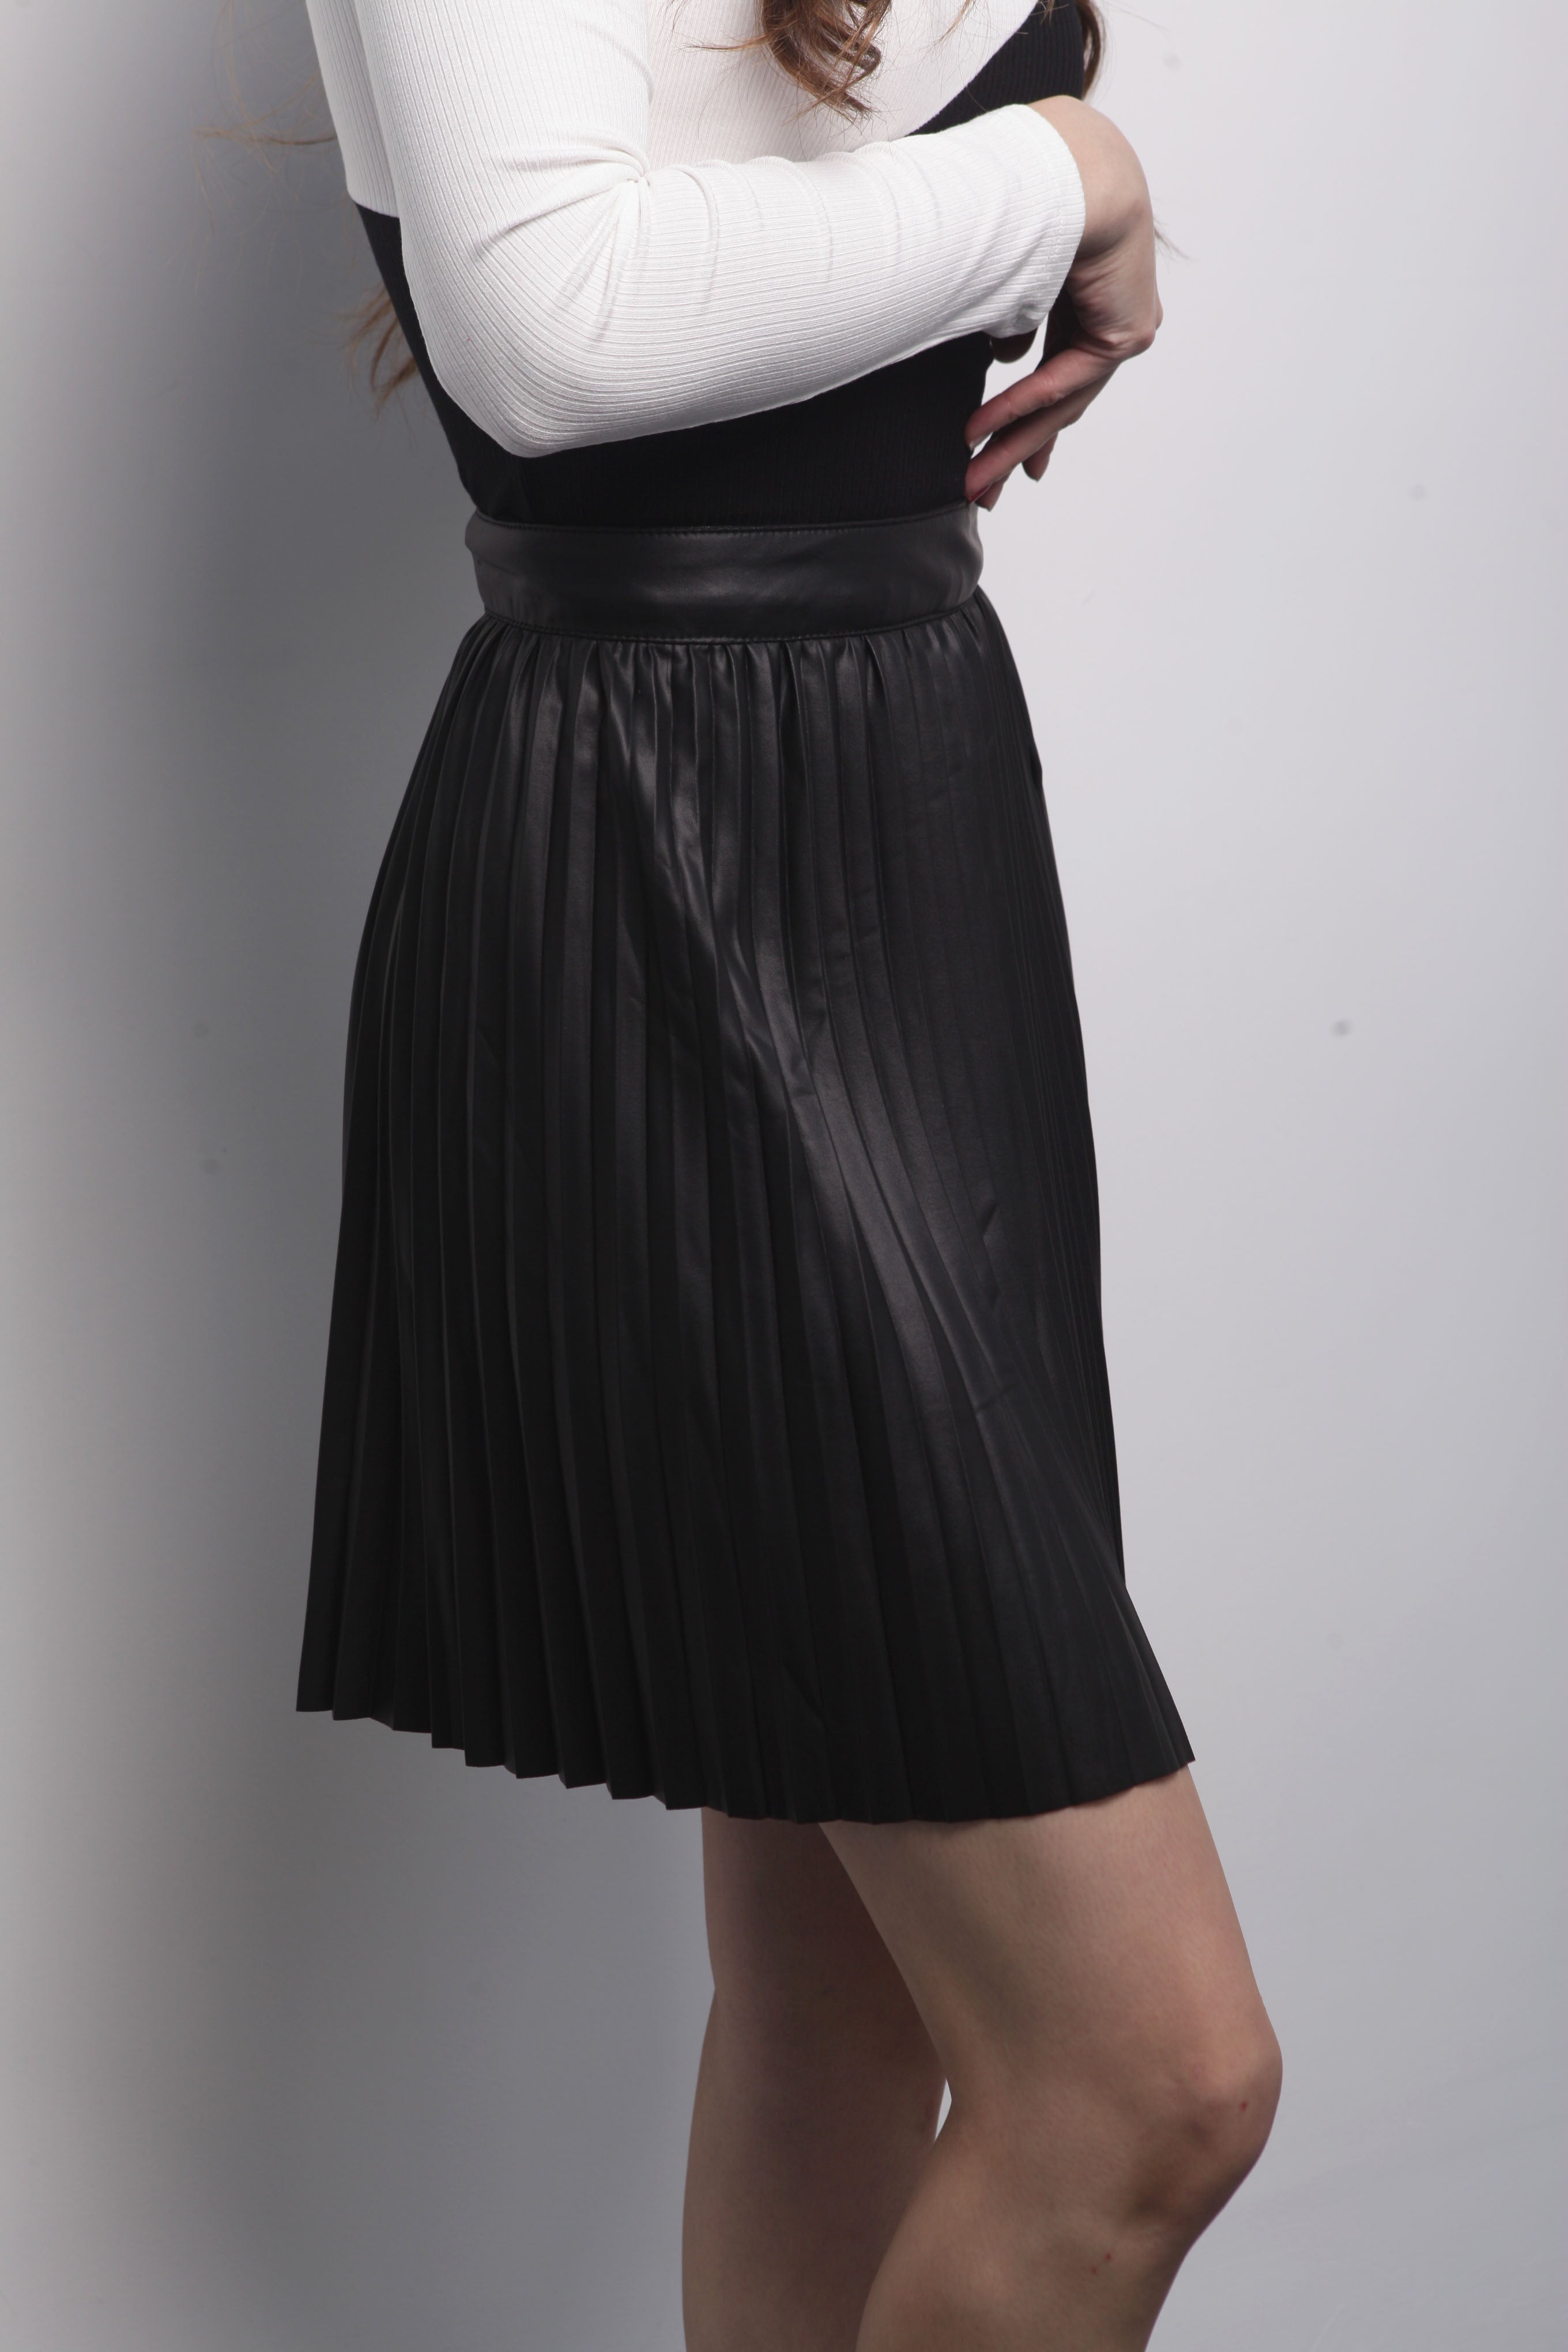 Mini falda tableada en vinipiel Fashion Styled